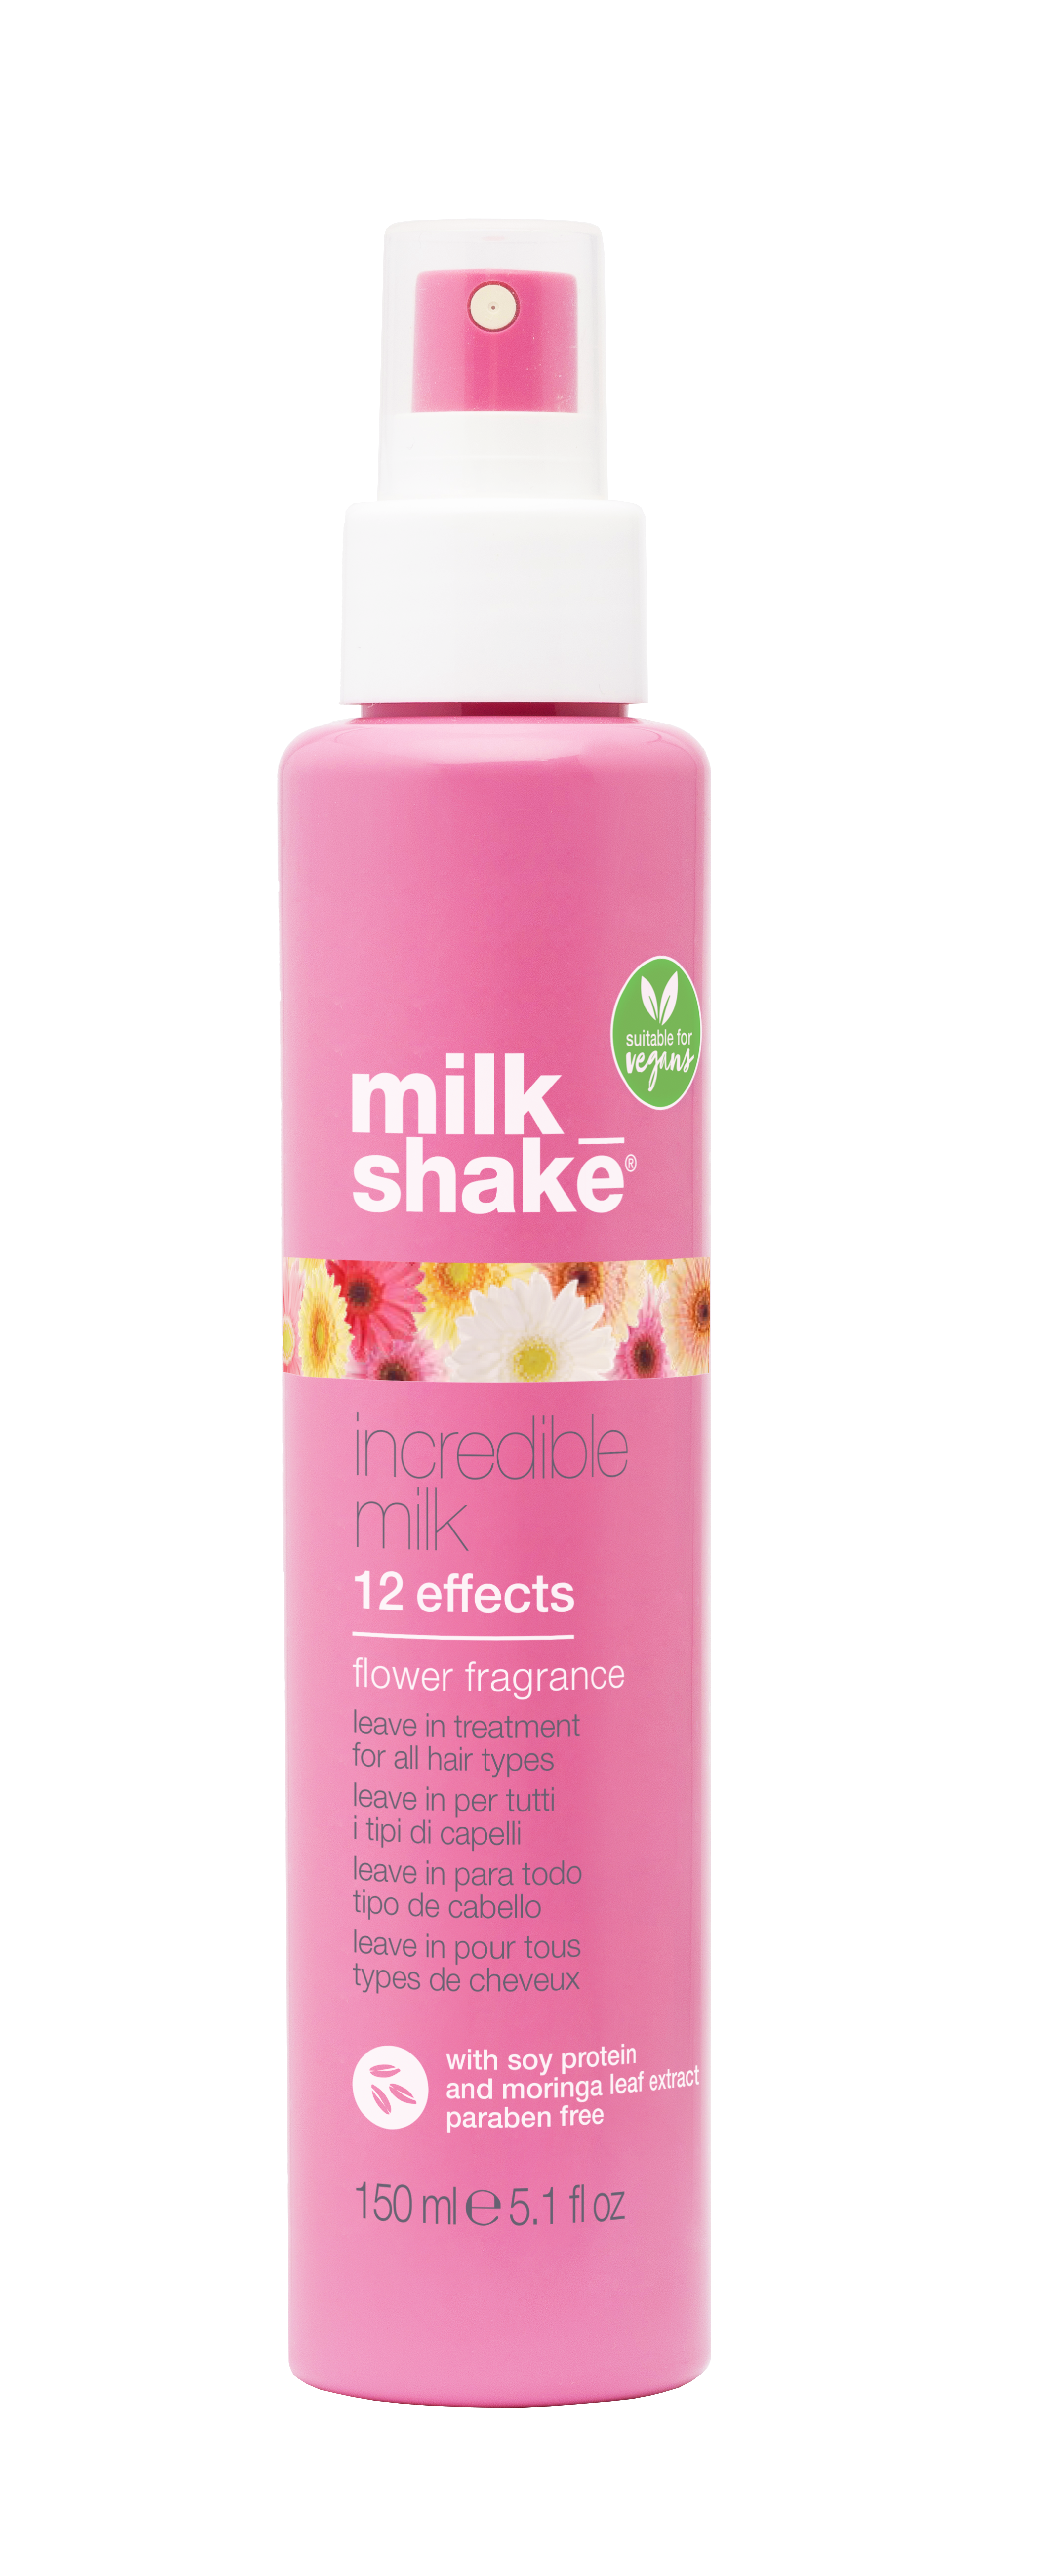 milk_shake - Incredible Milk 12 Effects Flower Power 150 ml - Skjønnhet